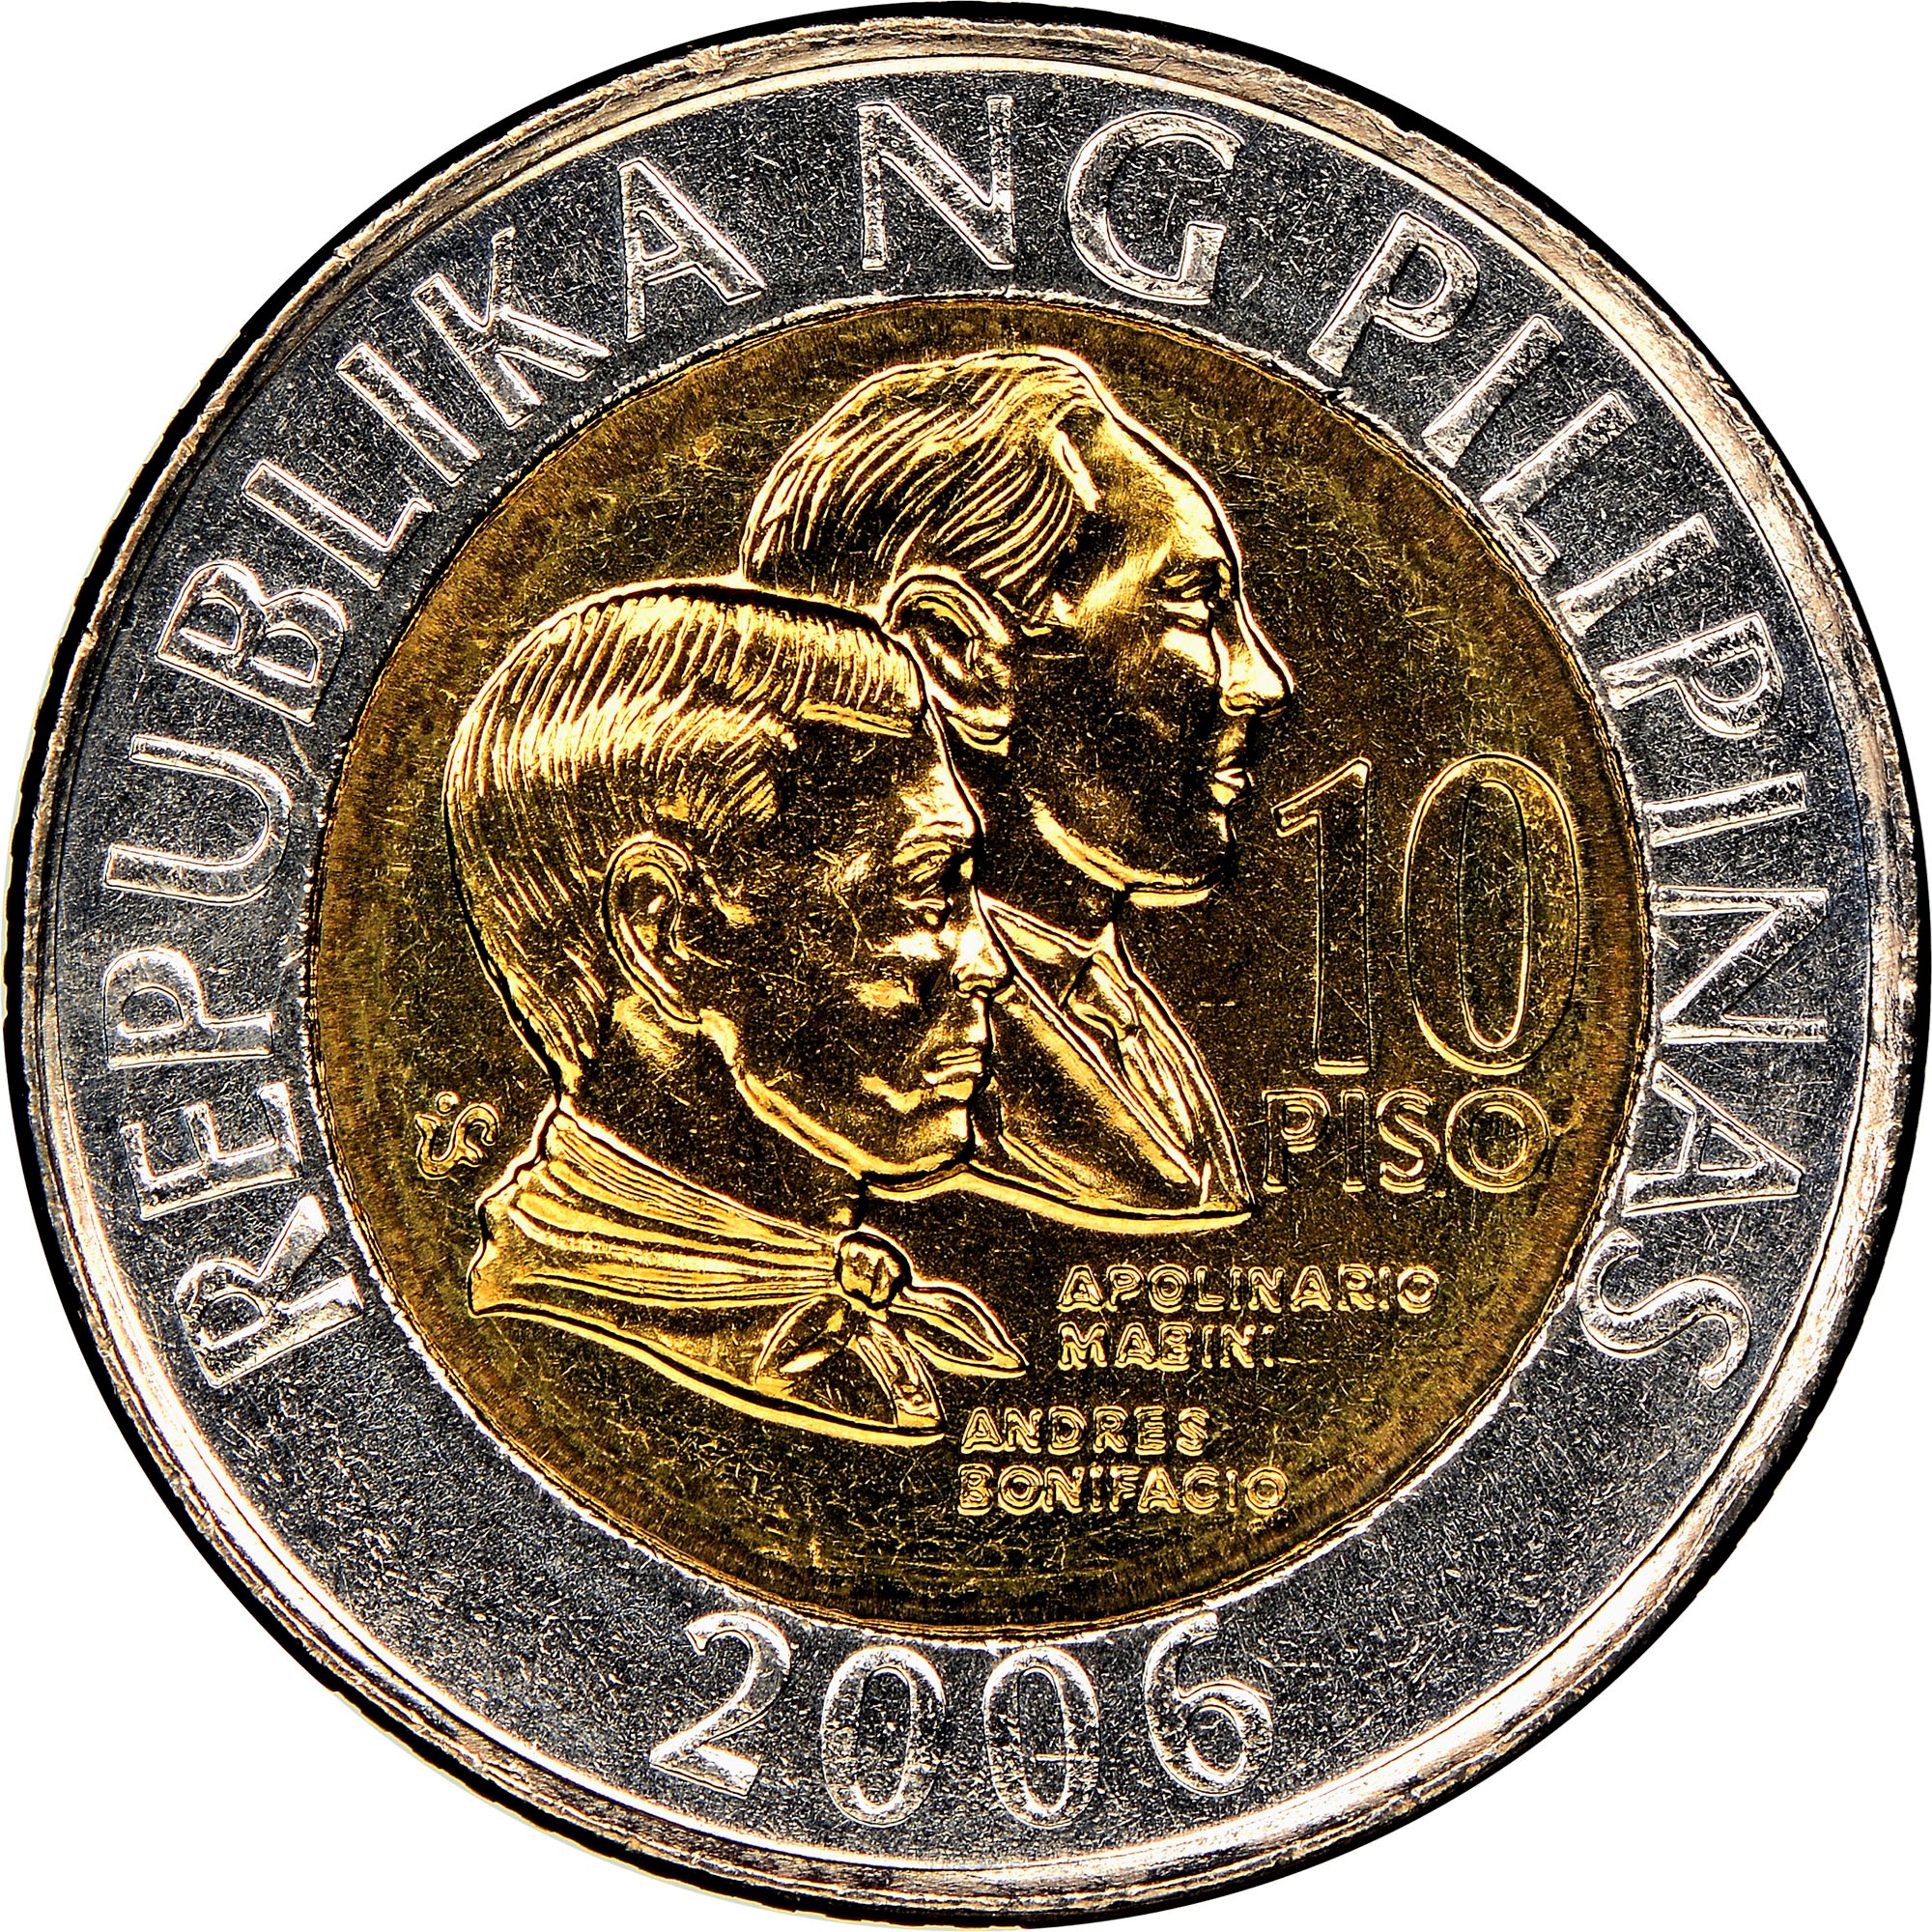 Coin Value: Mexico 1 Peso to 